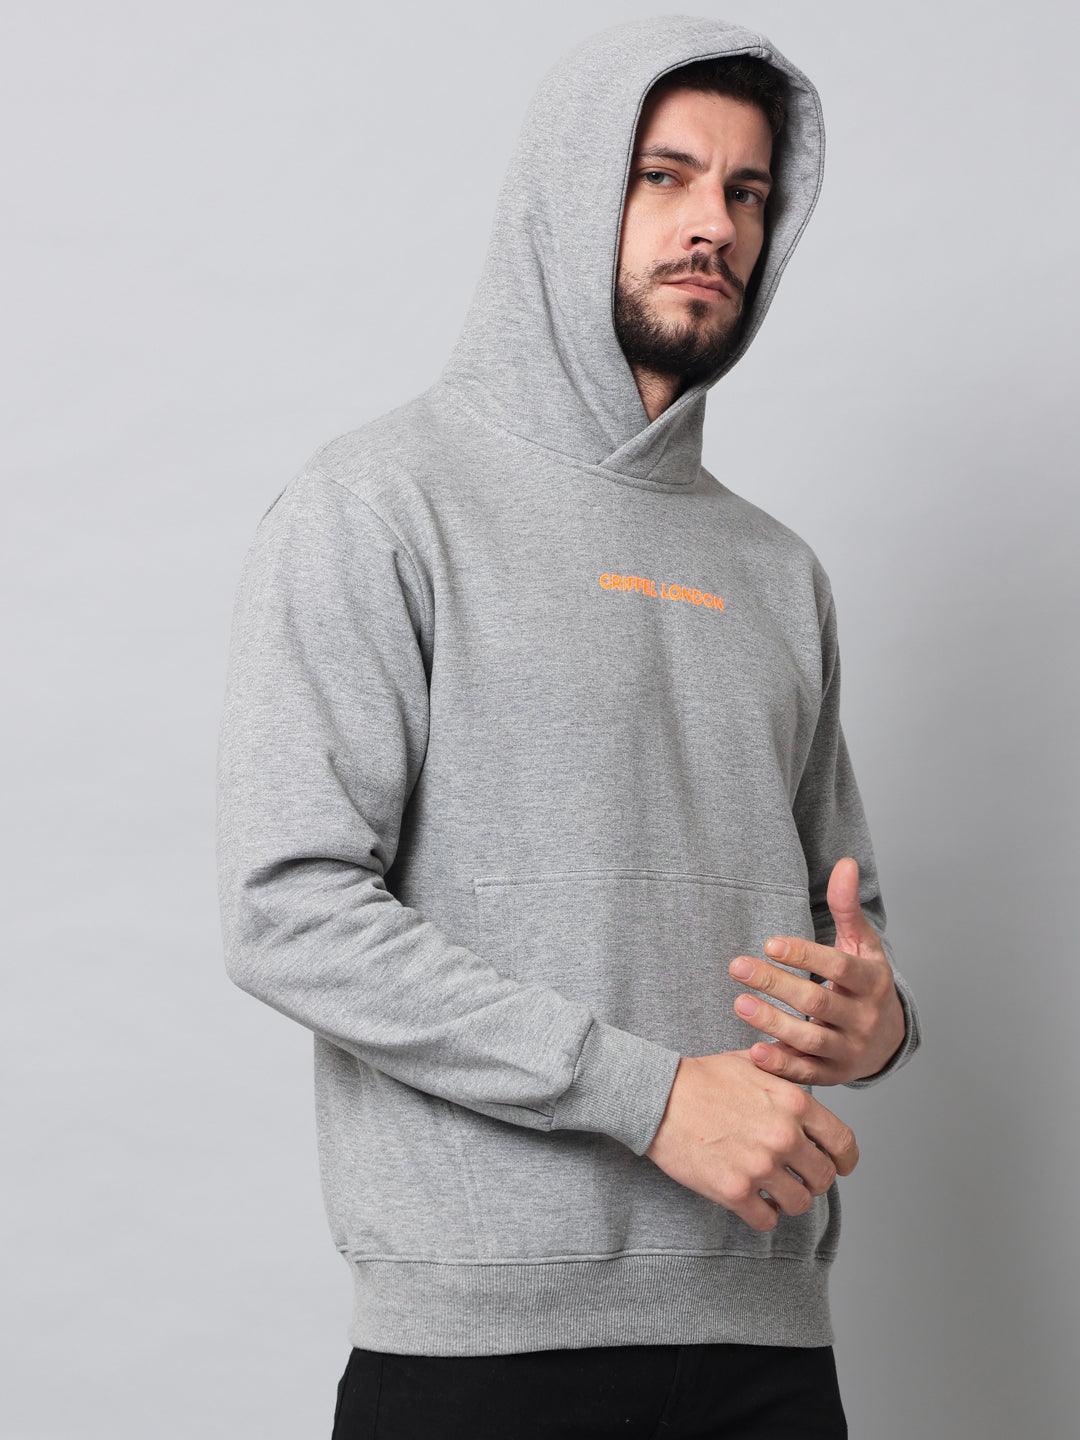 Griffel Men's Grey Cotton Front Logo Fleece Hoody Sweatshirt with Full Sleeve - griffel